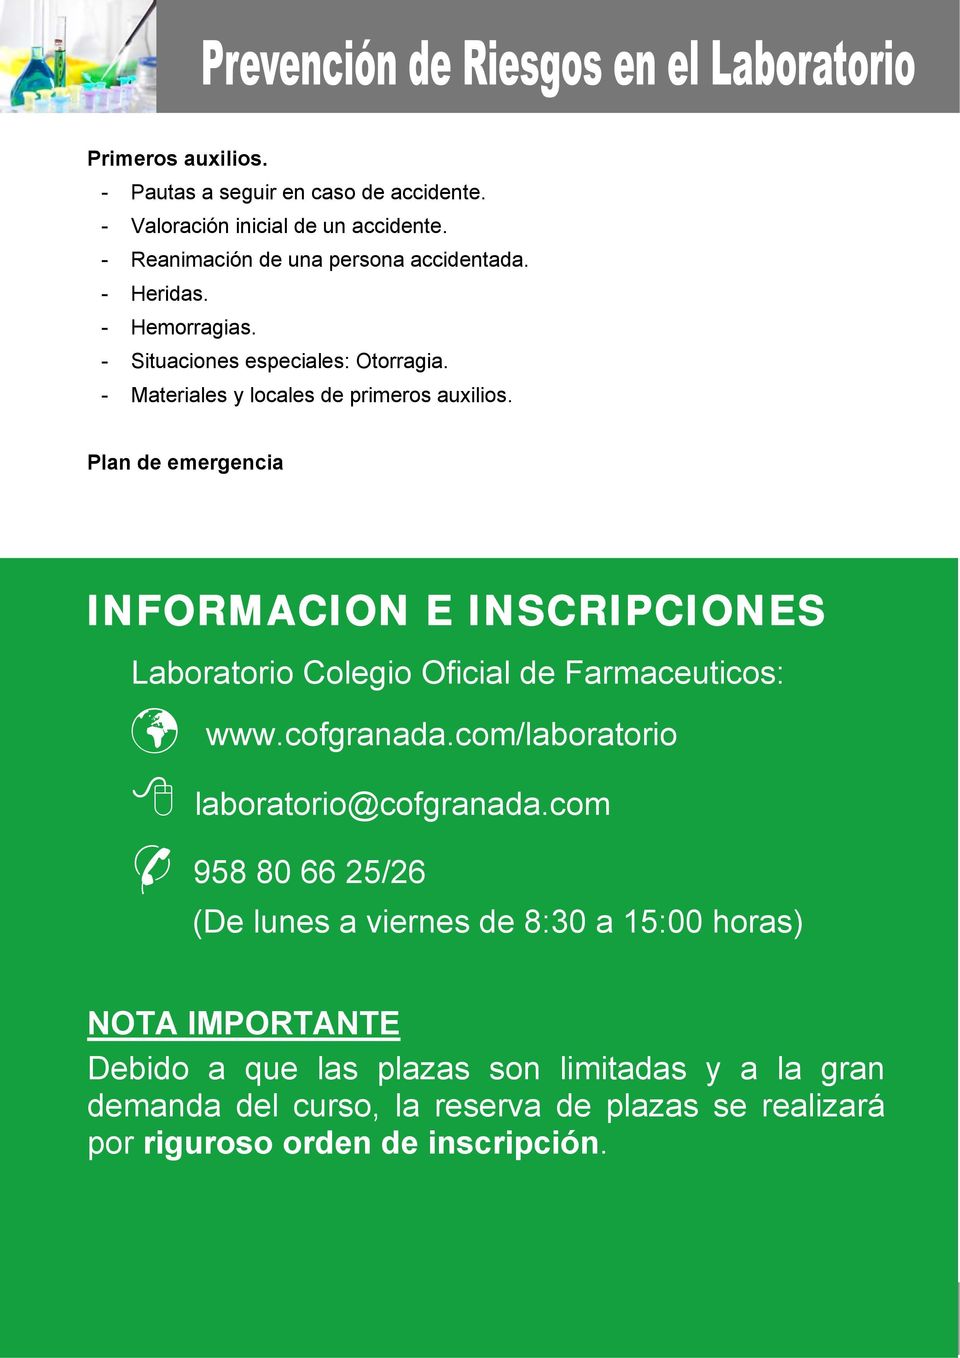 Plan de emergencia INFORMACION E INSCRIPCIONES Laboratorio : www.cofgranada.com/laboratorio laboratorio@cofgranada.